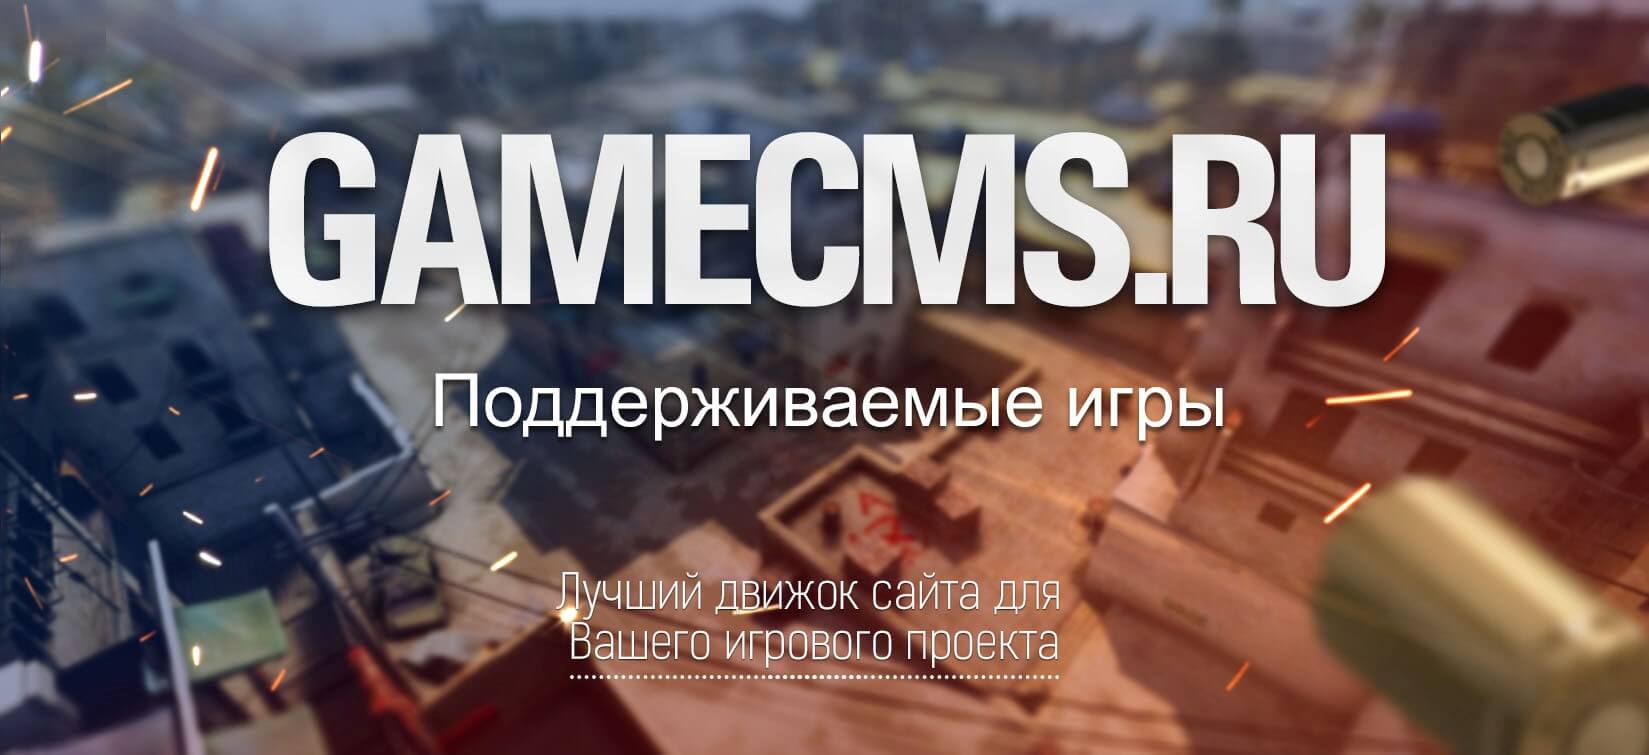 gamecms.ru